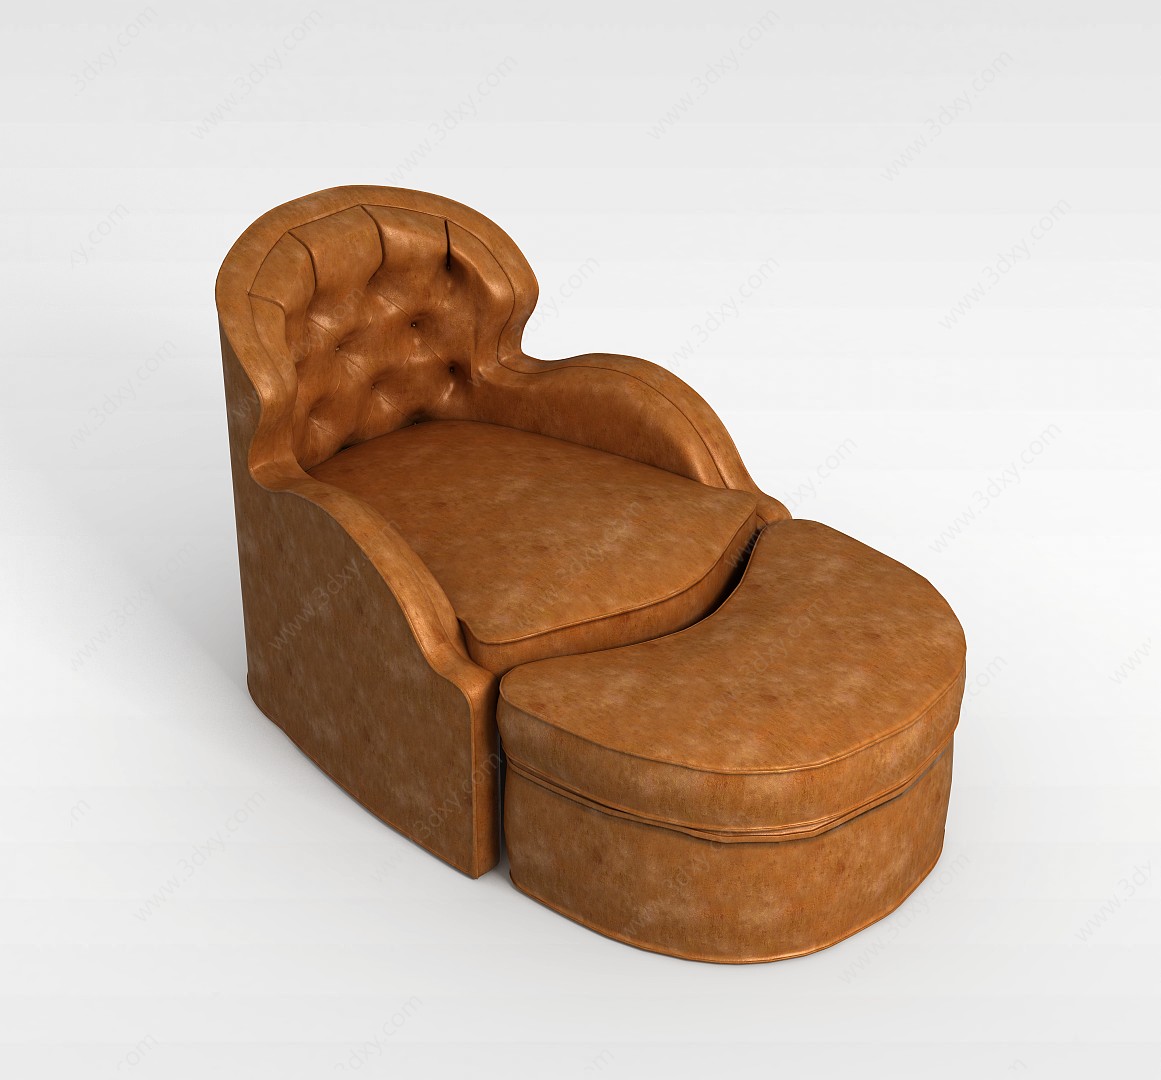 褐色单人沙发3D模型